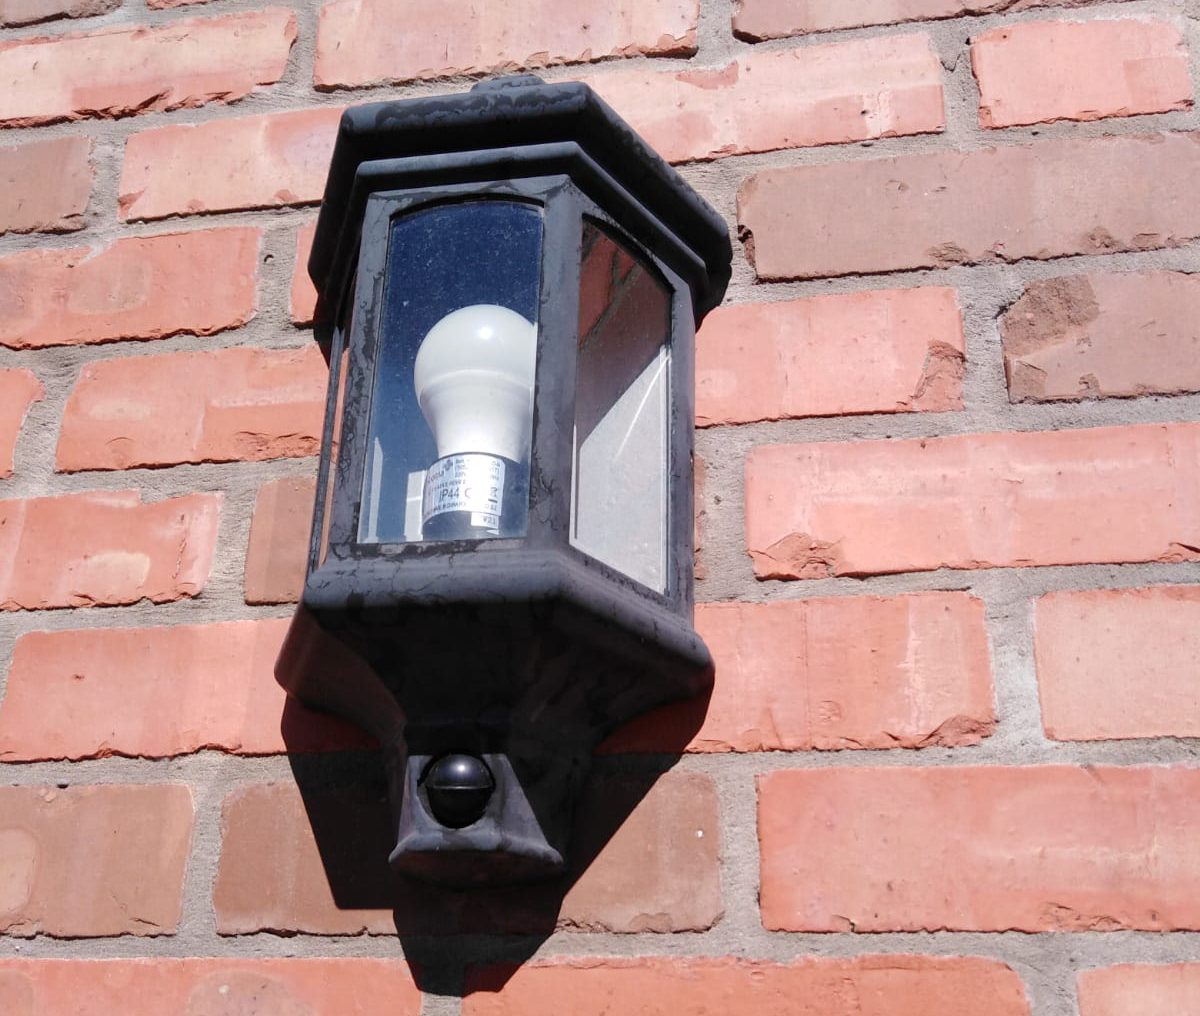 External light installation on a brick wall